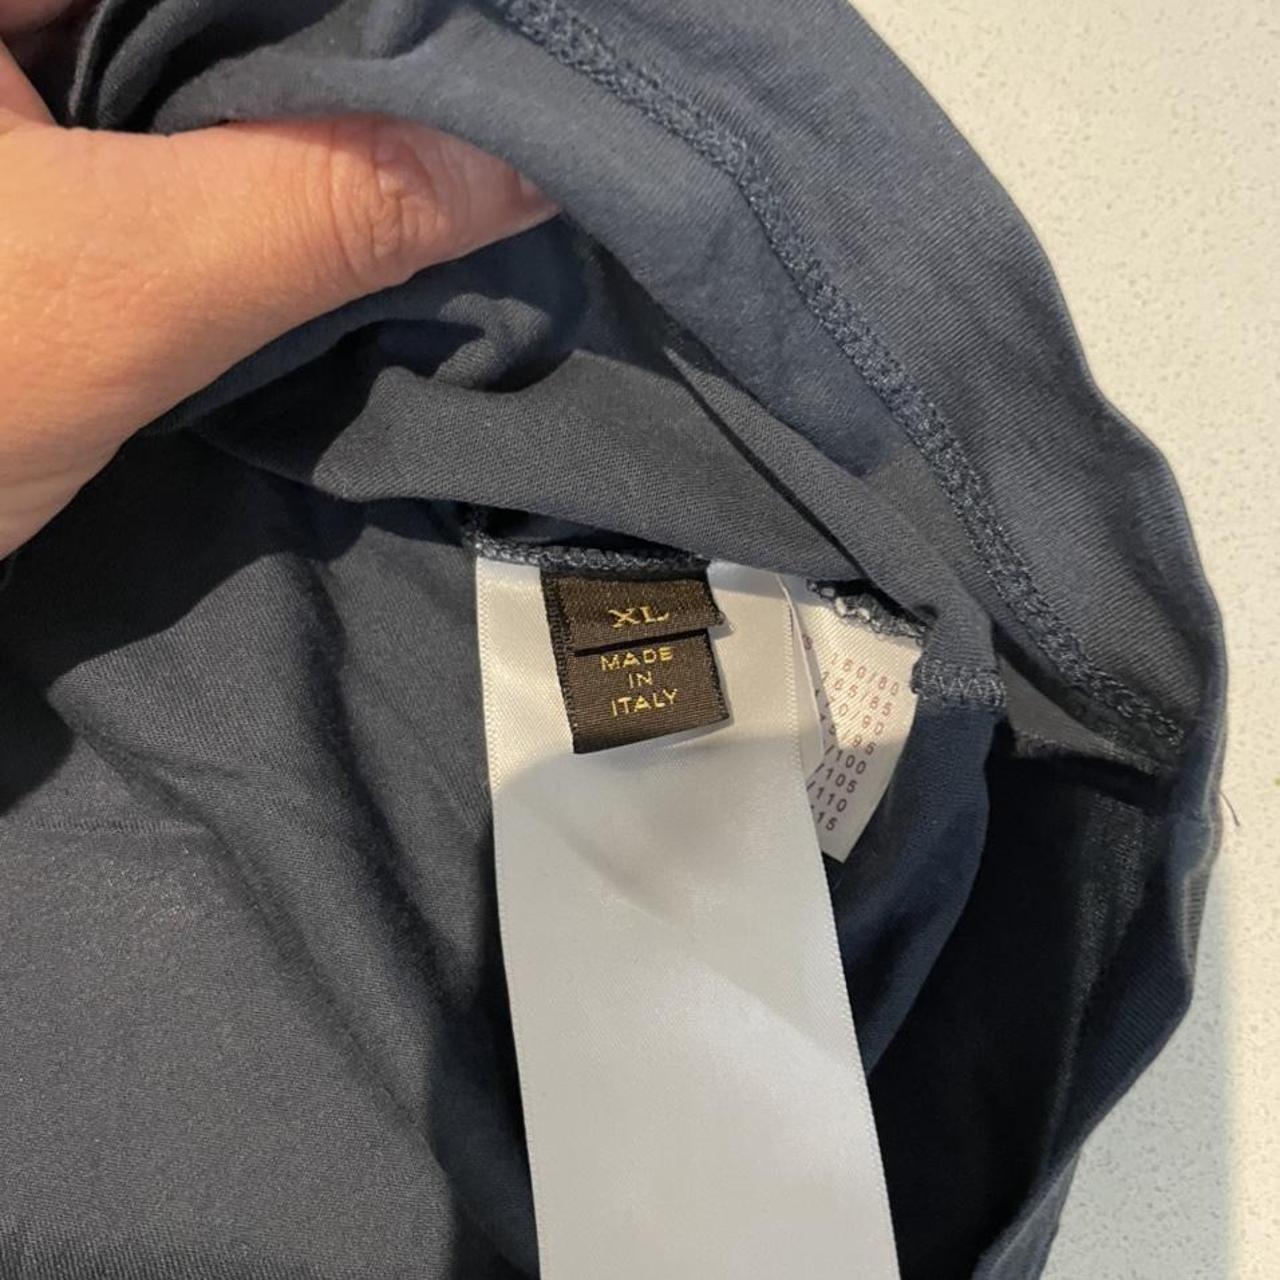 Louis Vuitton mens shirt size XL Excellent condition - Depop